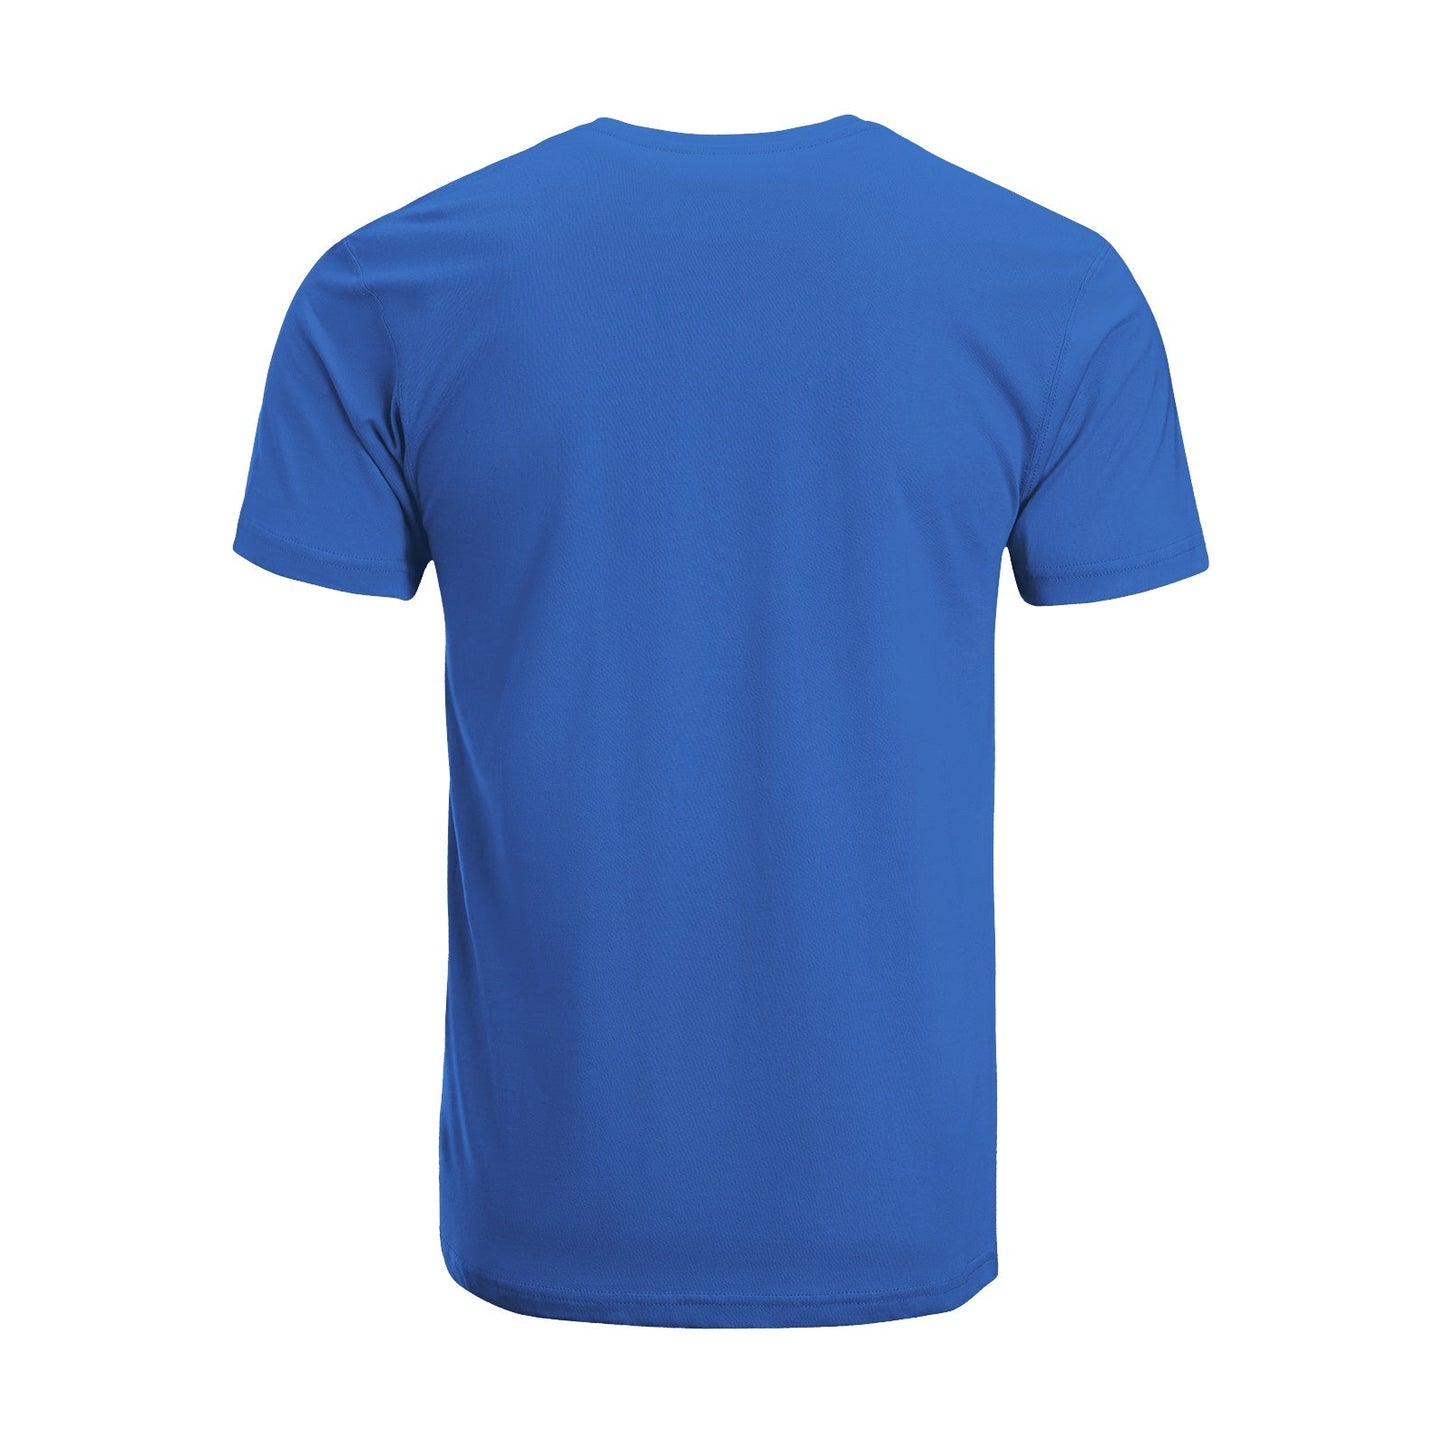 Unisex Short Sleeve Crew Neck Cotton Jersey T-Shirt TRUCK 43